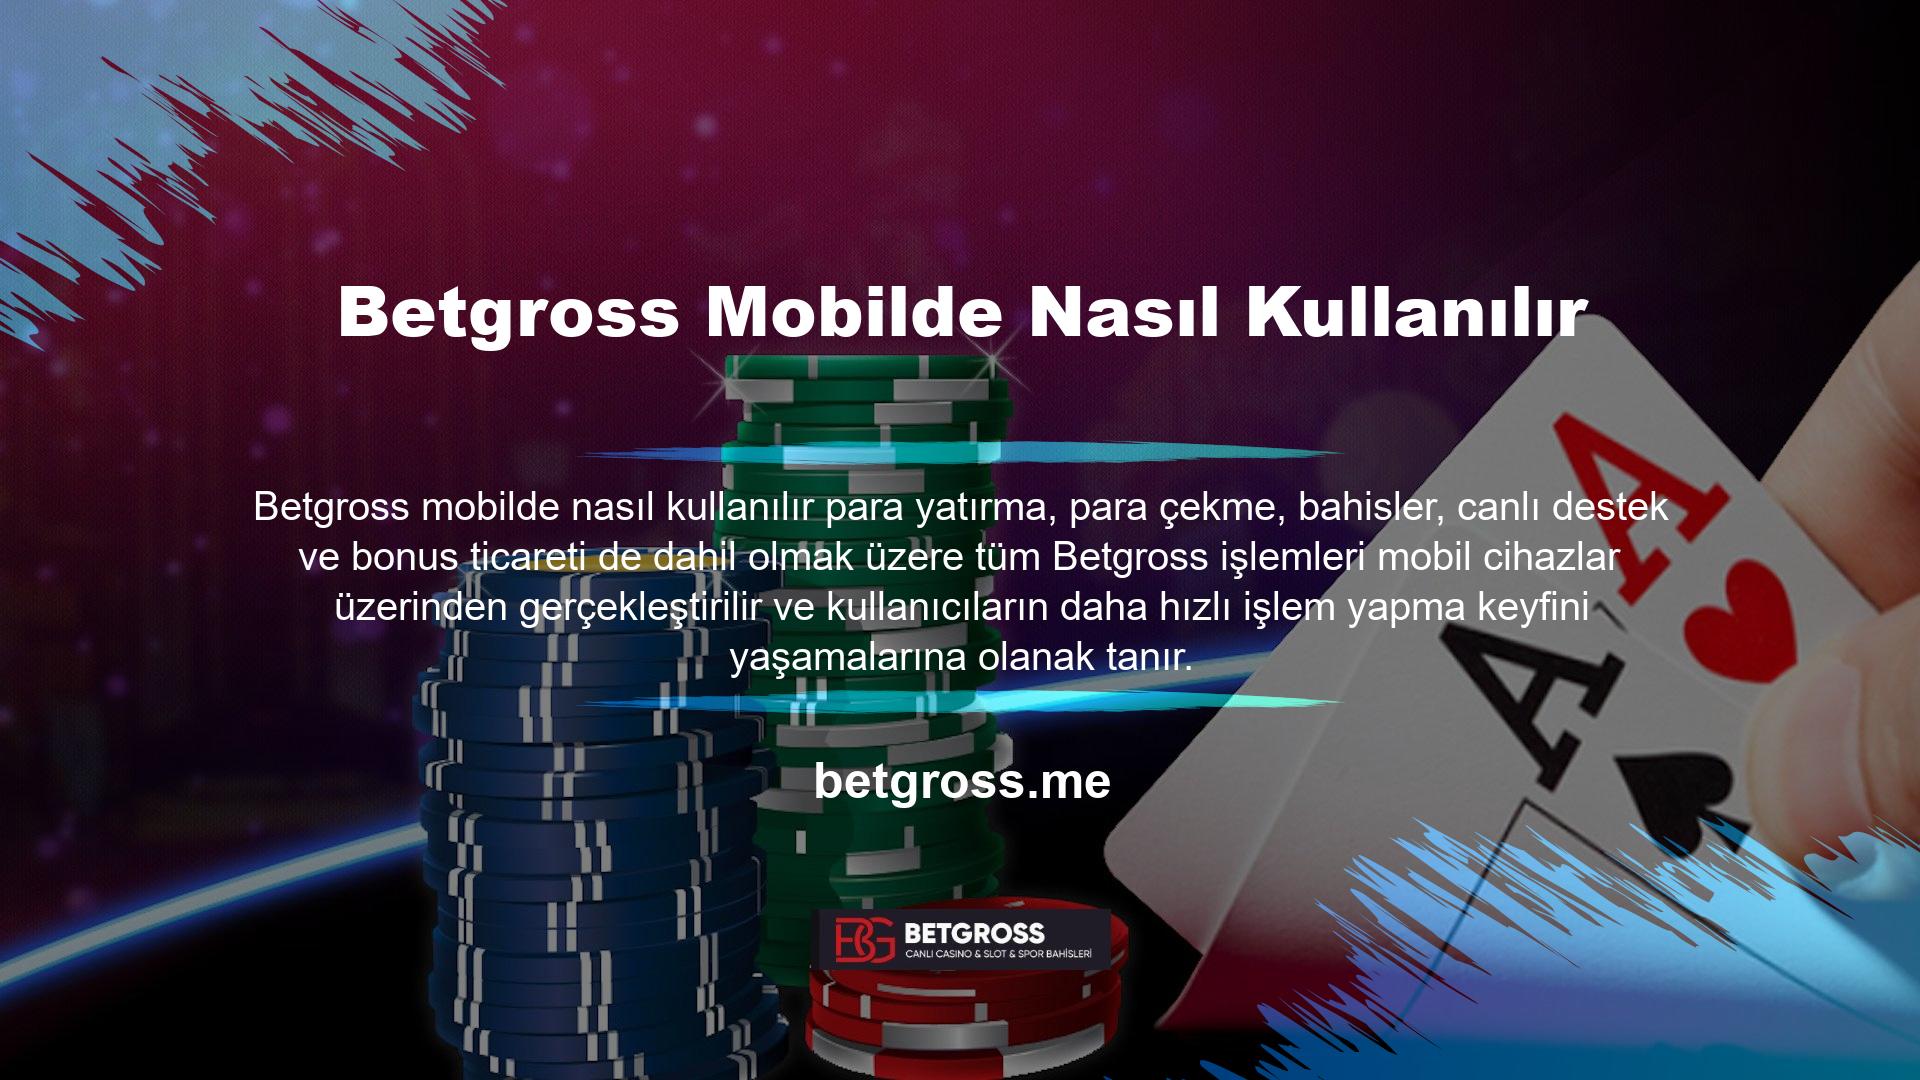 Betgross mobil kullanımı üyeleri arasında oldukça popüler, program altyapısına sahip, program giriş sayısı fazla ve kaliteli bir firma tarafından üretiliyor